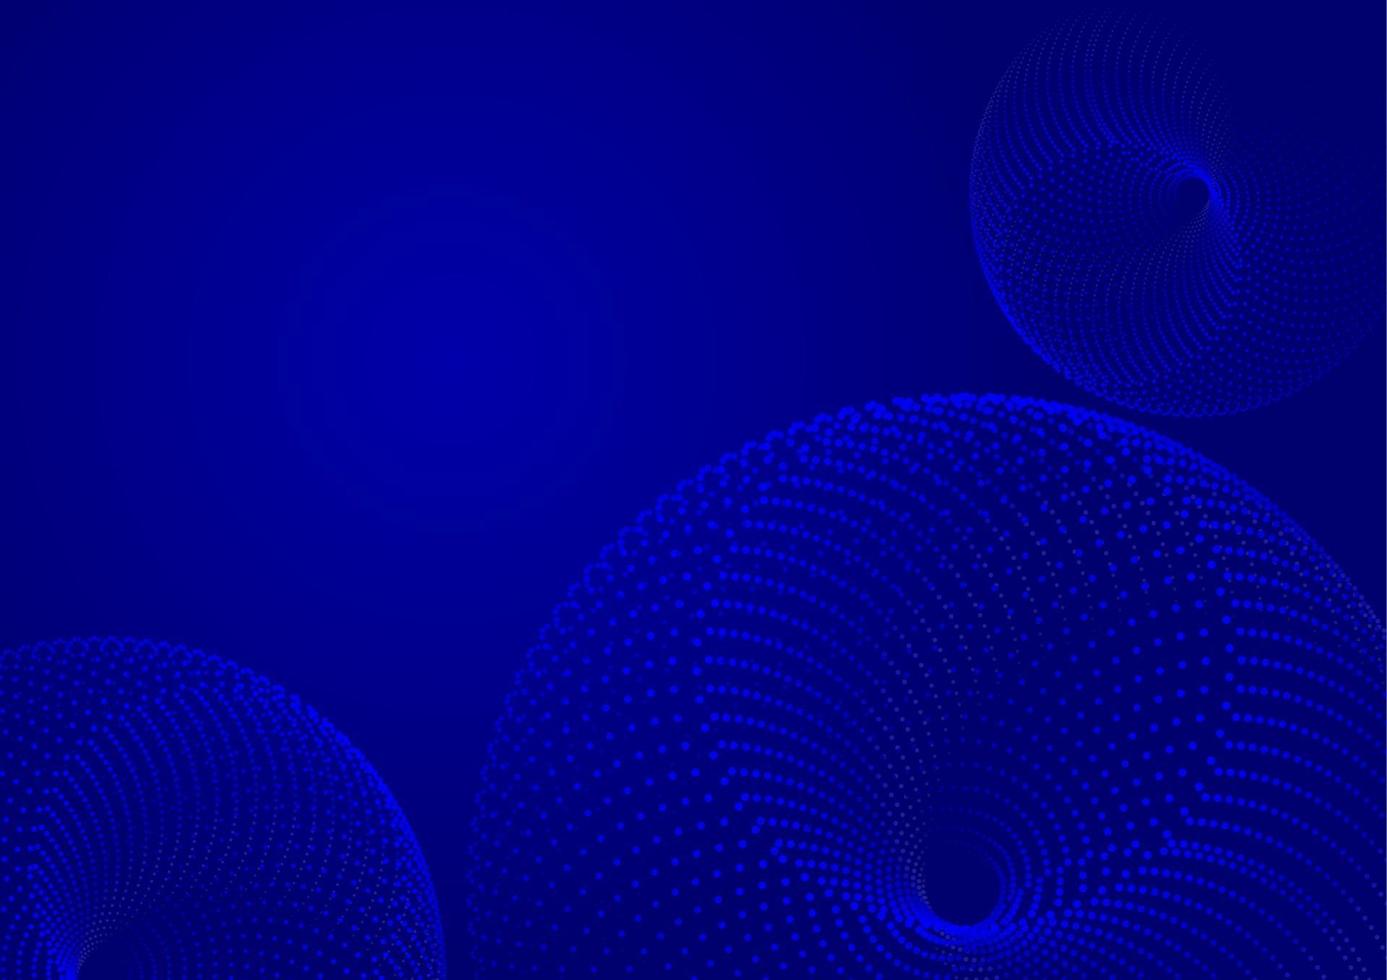 Hintergrund abstrakte drak blau zufällige Punkte Vektor-Illustration vektor